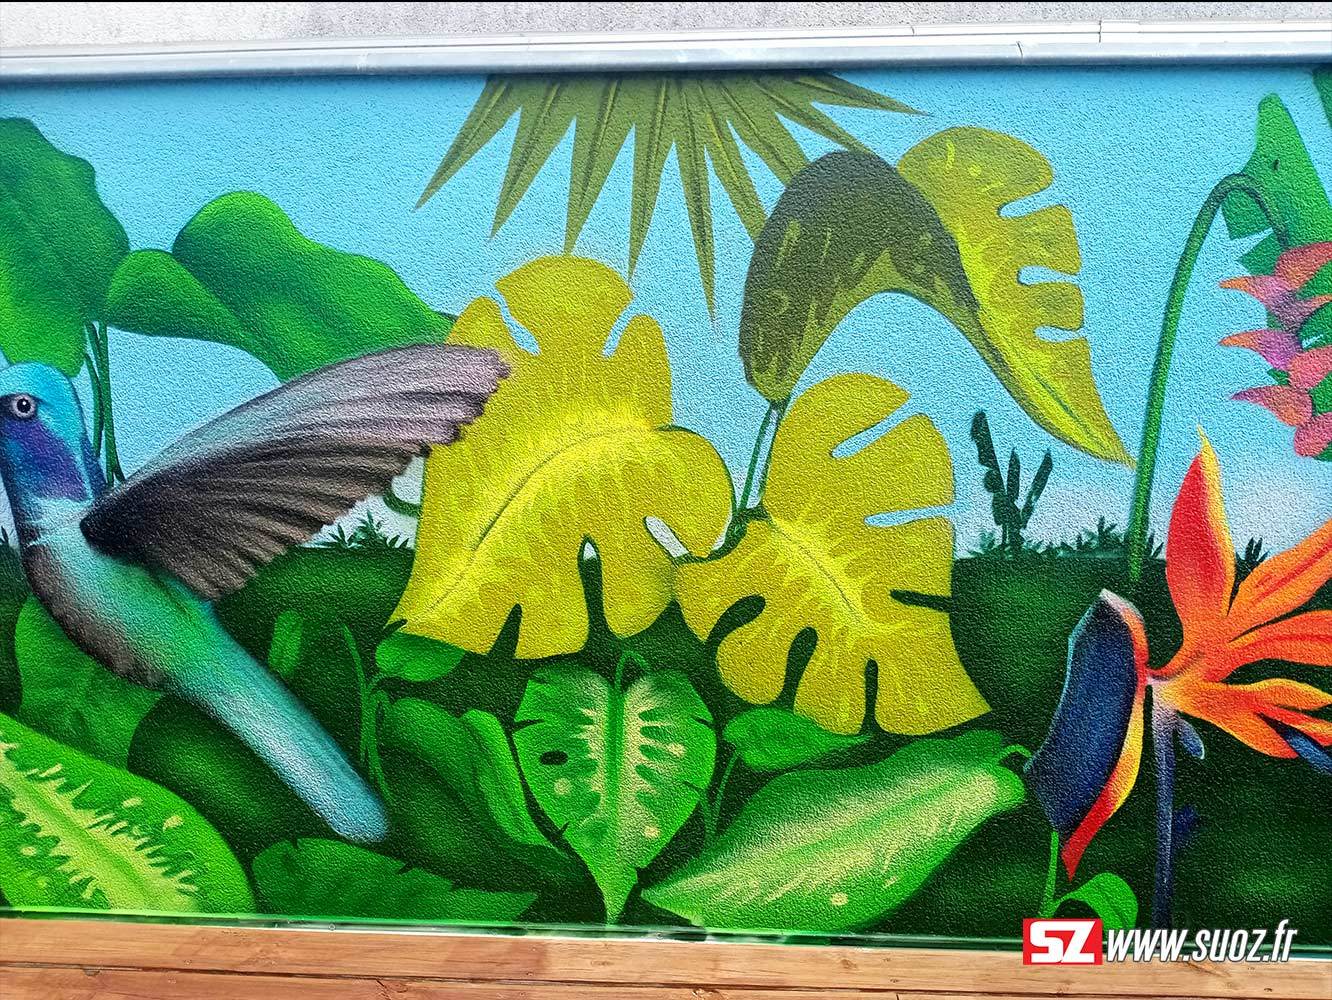 7-graffeur-professionel-suoz-jungle-fleur-tropical-fleur-colibiri-la-rochelle-france-decor-graffiti